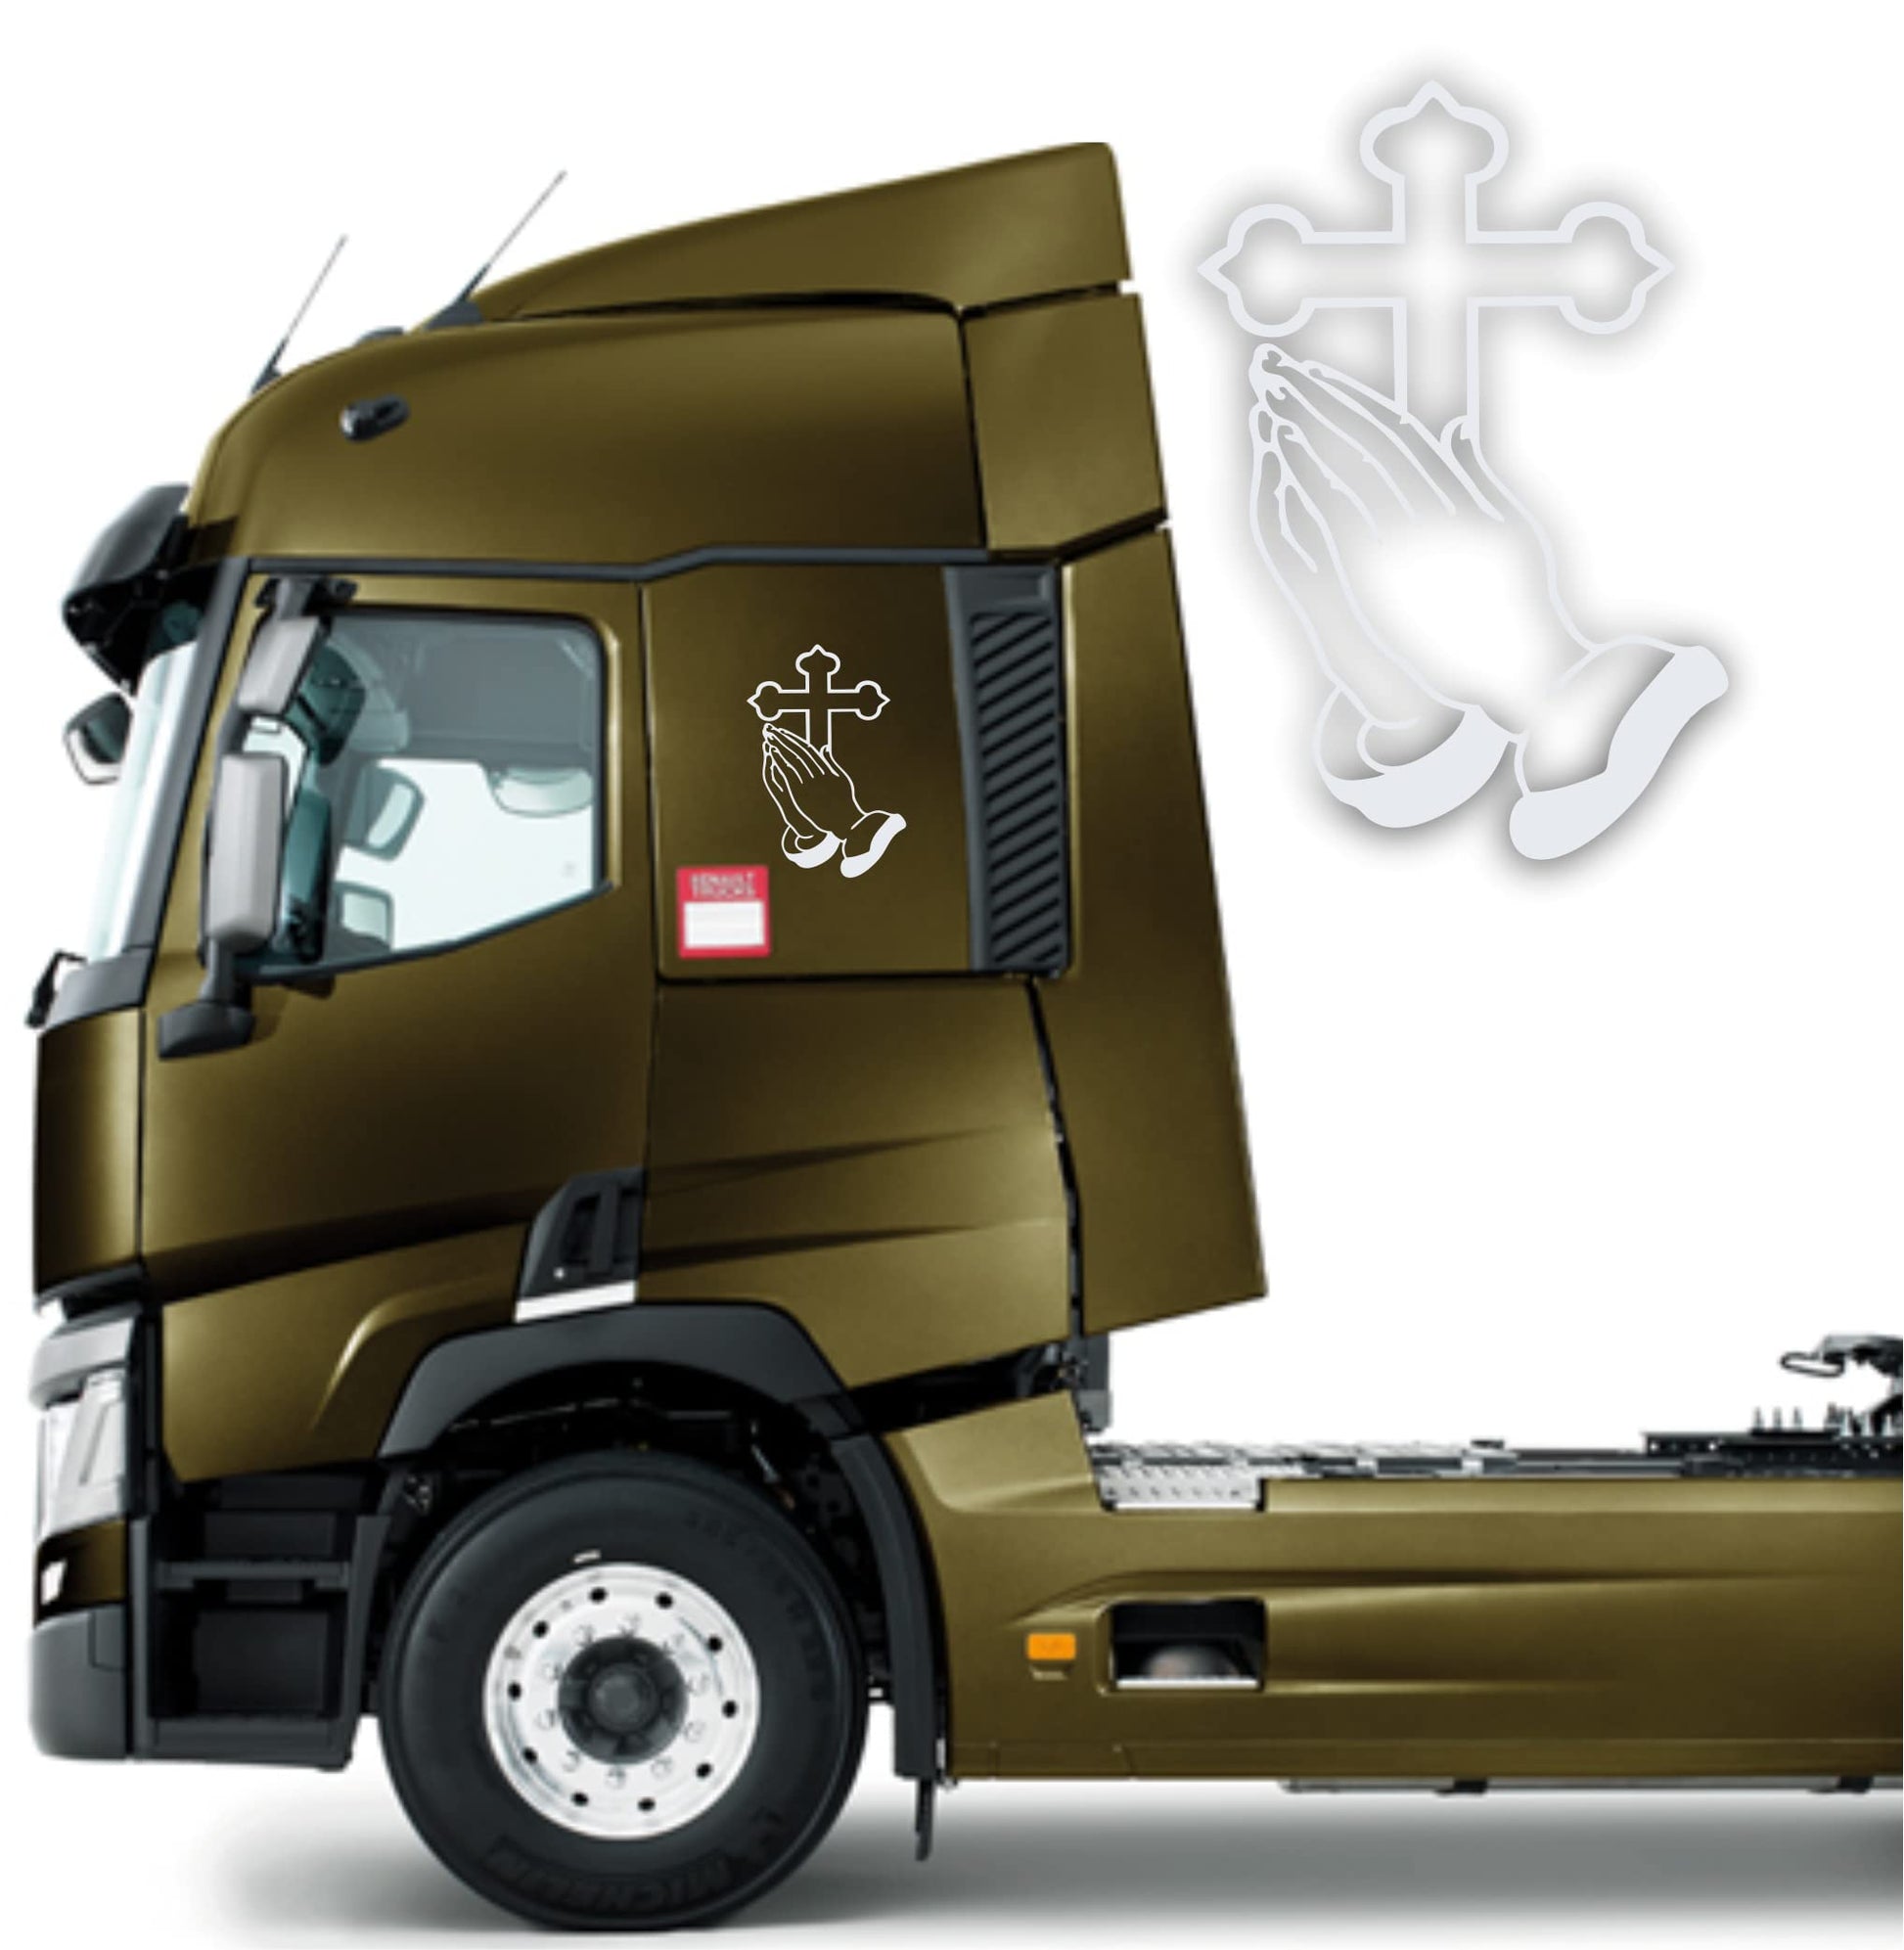 DualColorStampe Adesivi compatibili con Scania Iveco Man Daf Volvo tir furgone crocifisso Madonna decorazioni camion accessori auto stickers COD.0226 a €18.90 solo da DualColorStampe